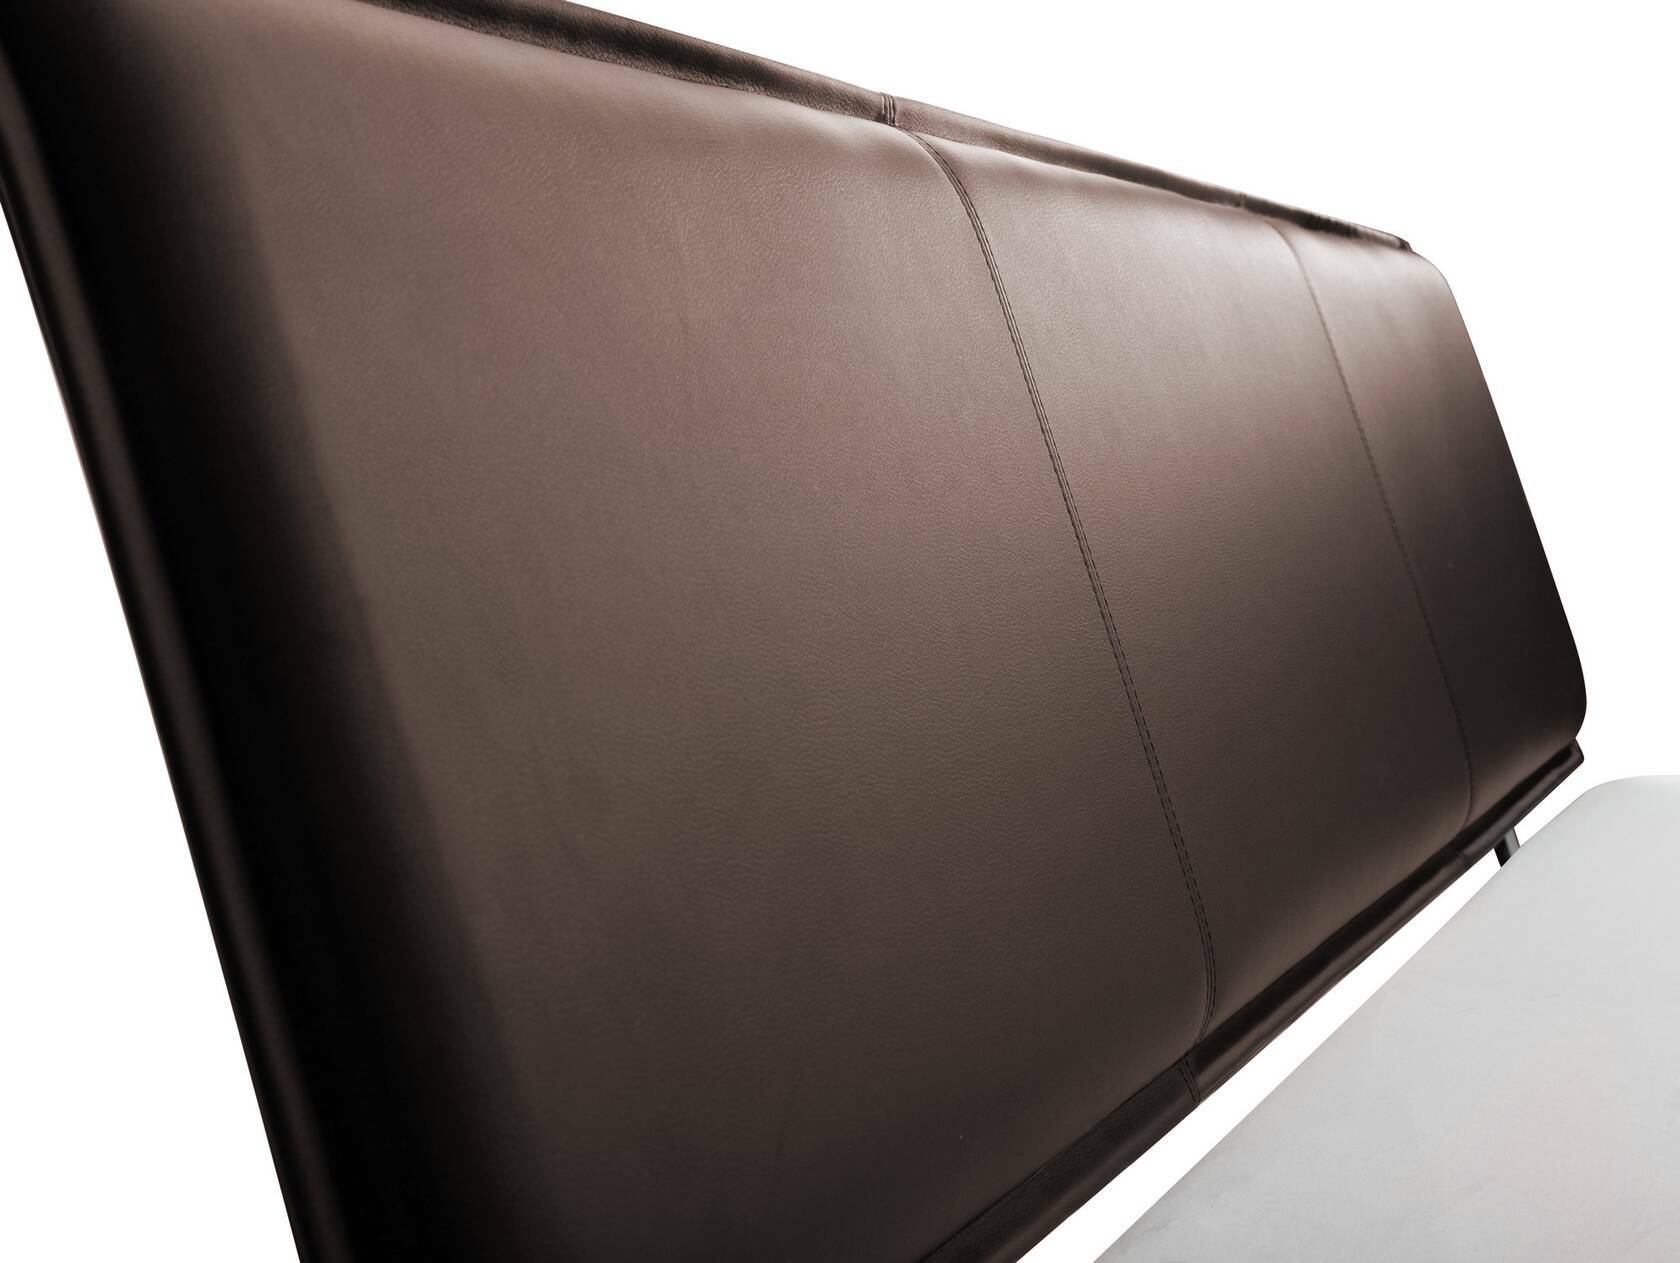 LIAS Balkenbett mit Polster-Kopfteil, Wangenfuß, Material Massivholz Eiche 160 x 200 cm | Kunstleder Braun ohne Steppung